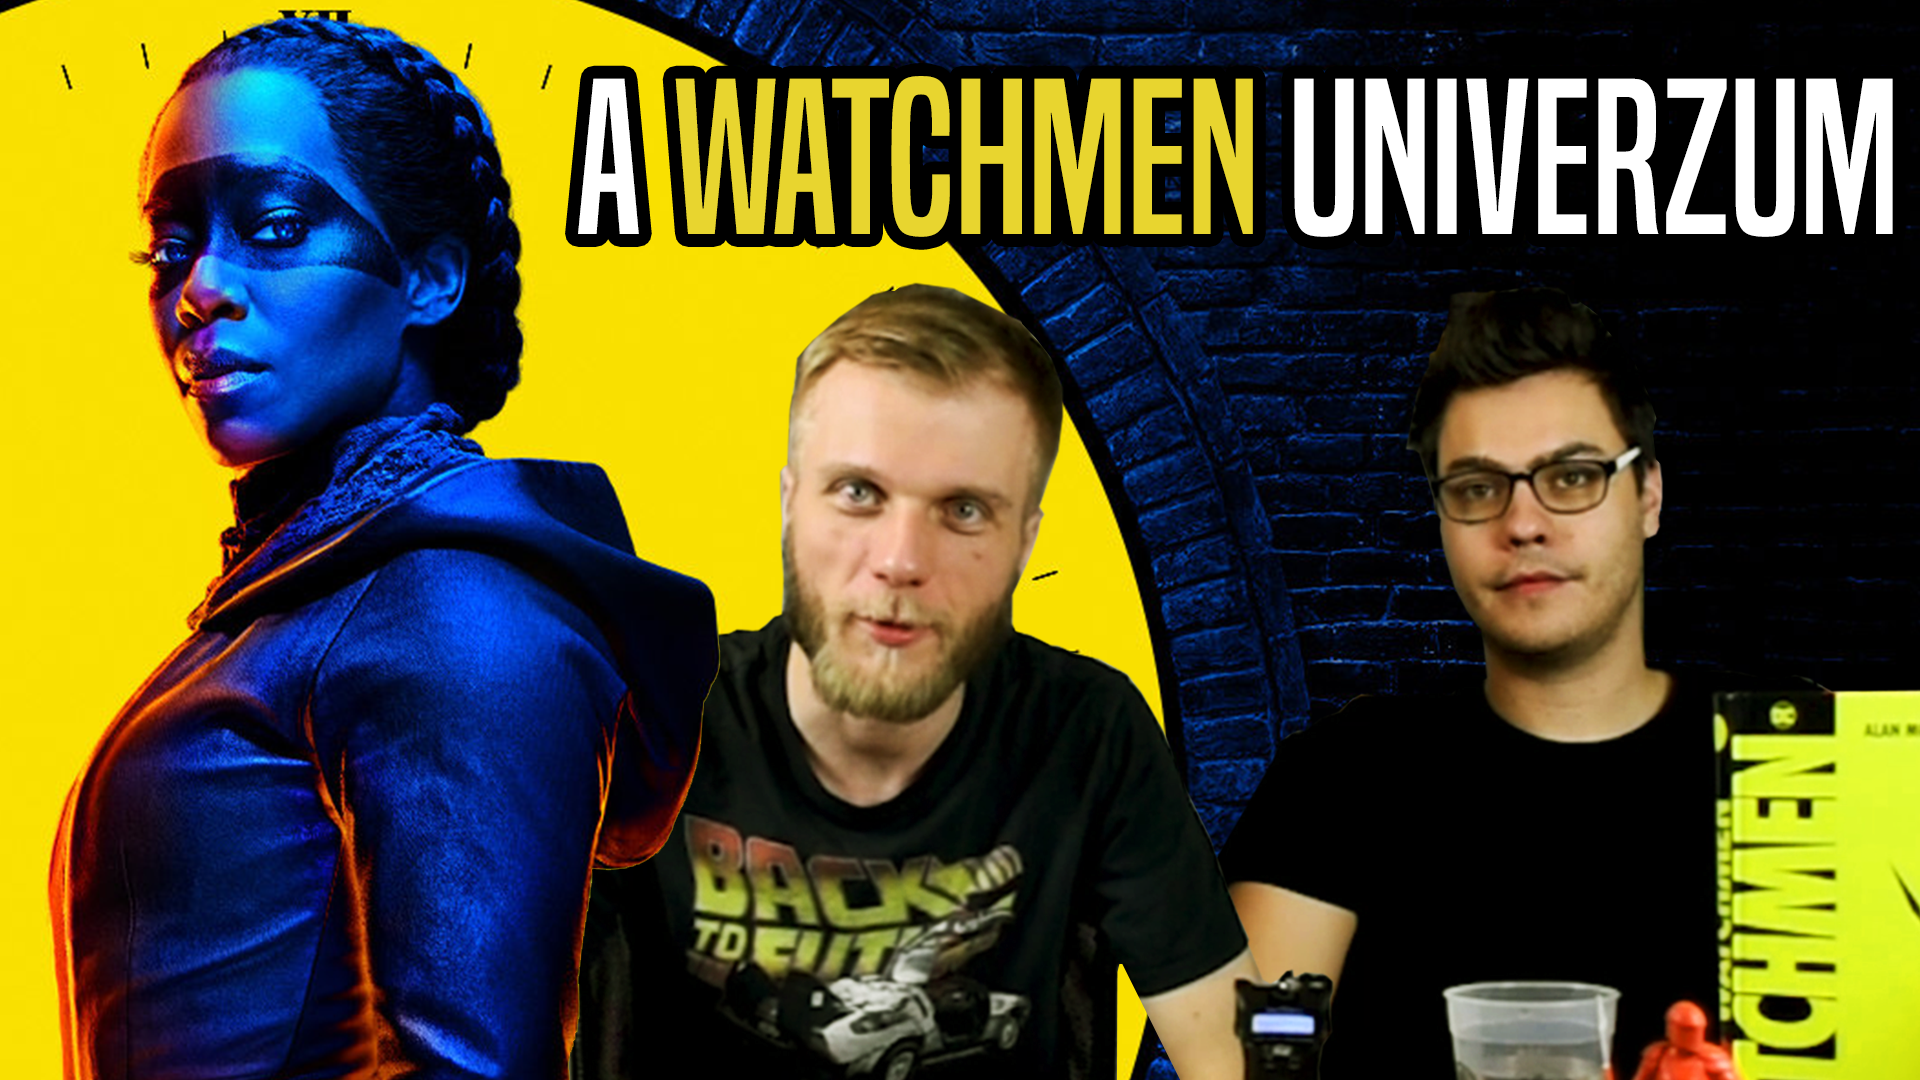 Milyen a Watchmen univerzum?